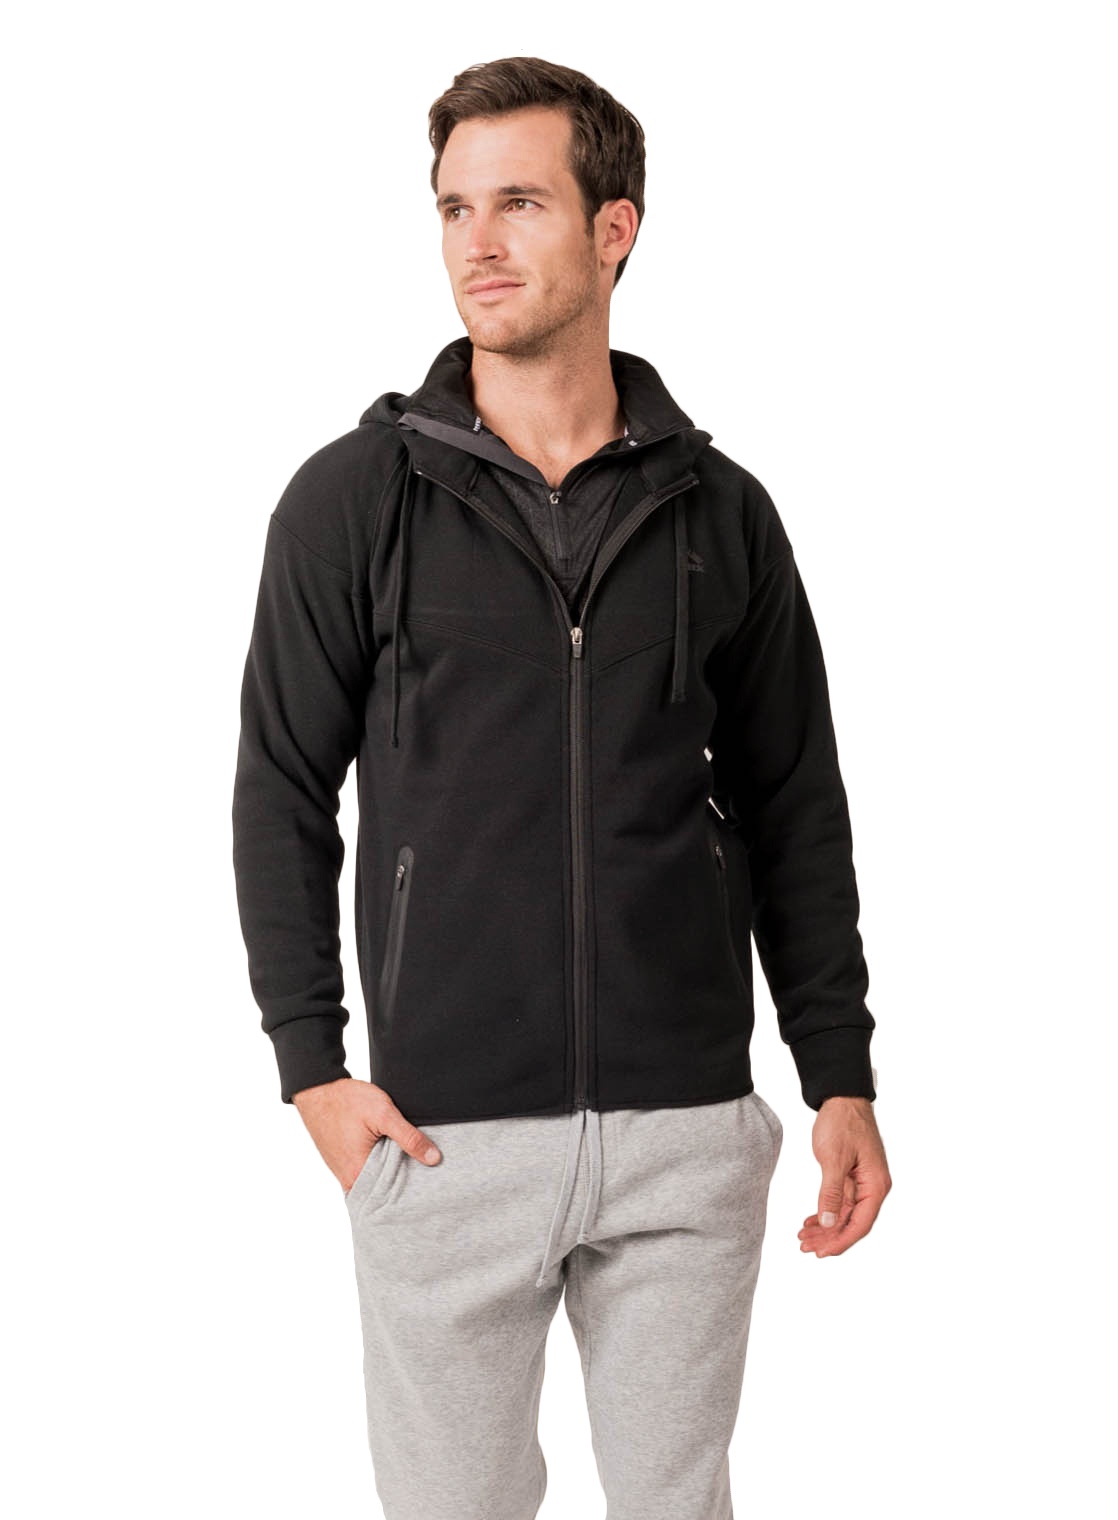 RBX - RBX Active Men's Athletic Fleece Full Front Zip Up Hooded ...